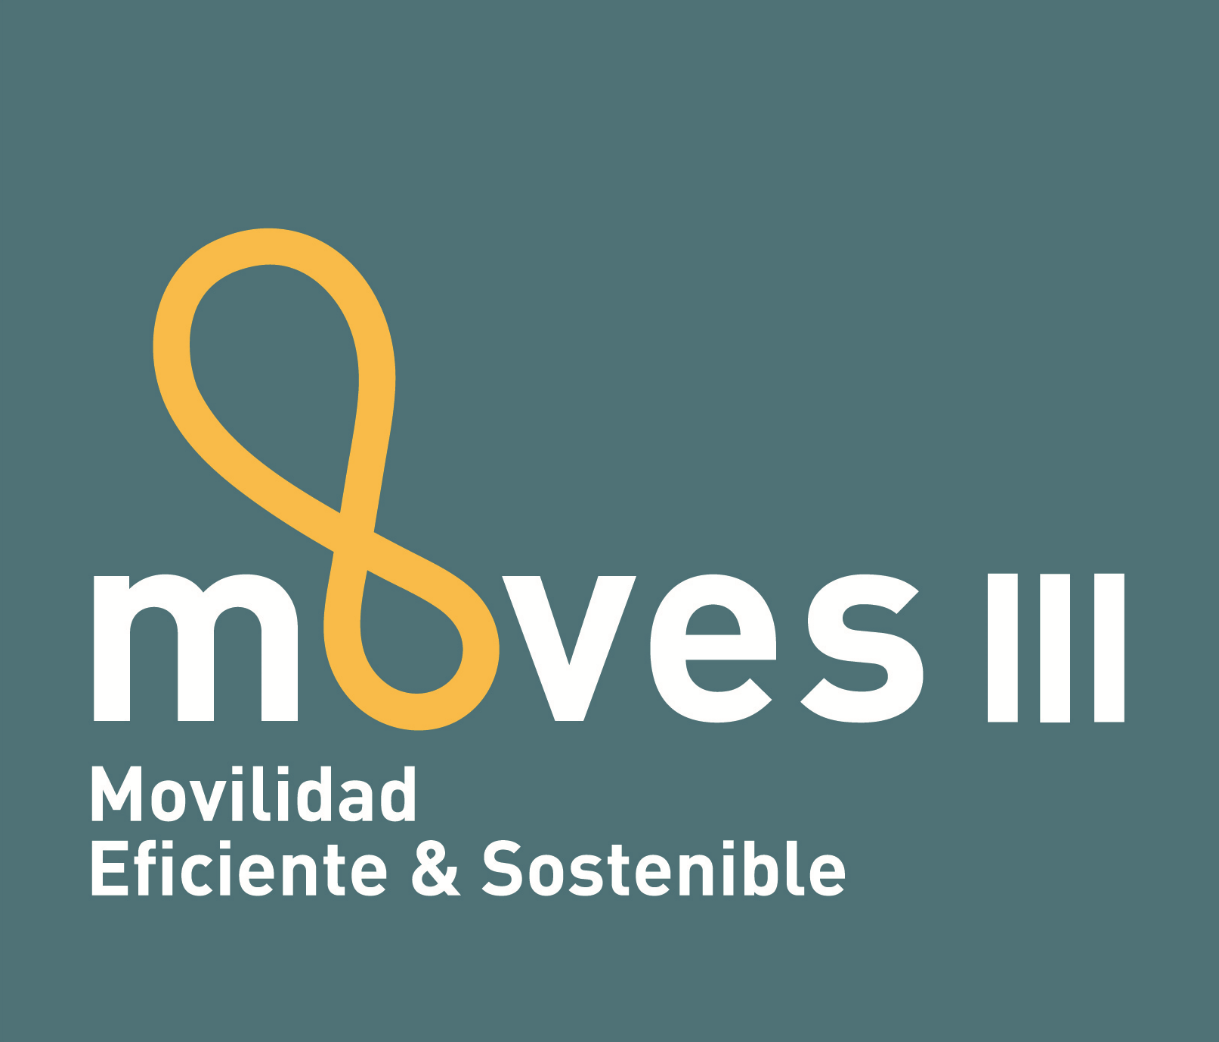 MOVES III, Movilidad Eficiente & Sostenible